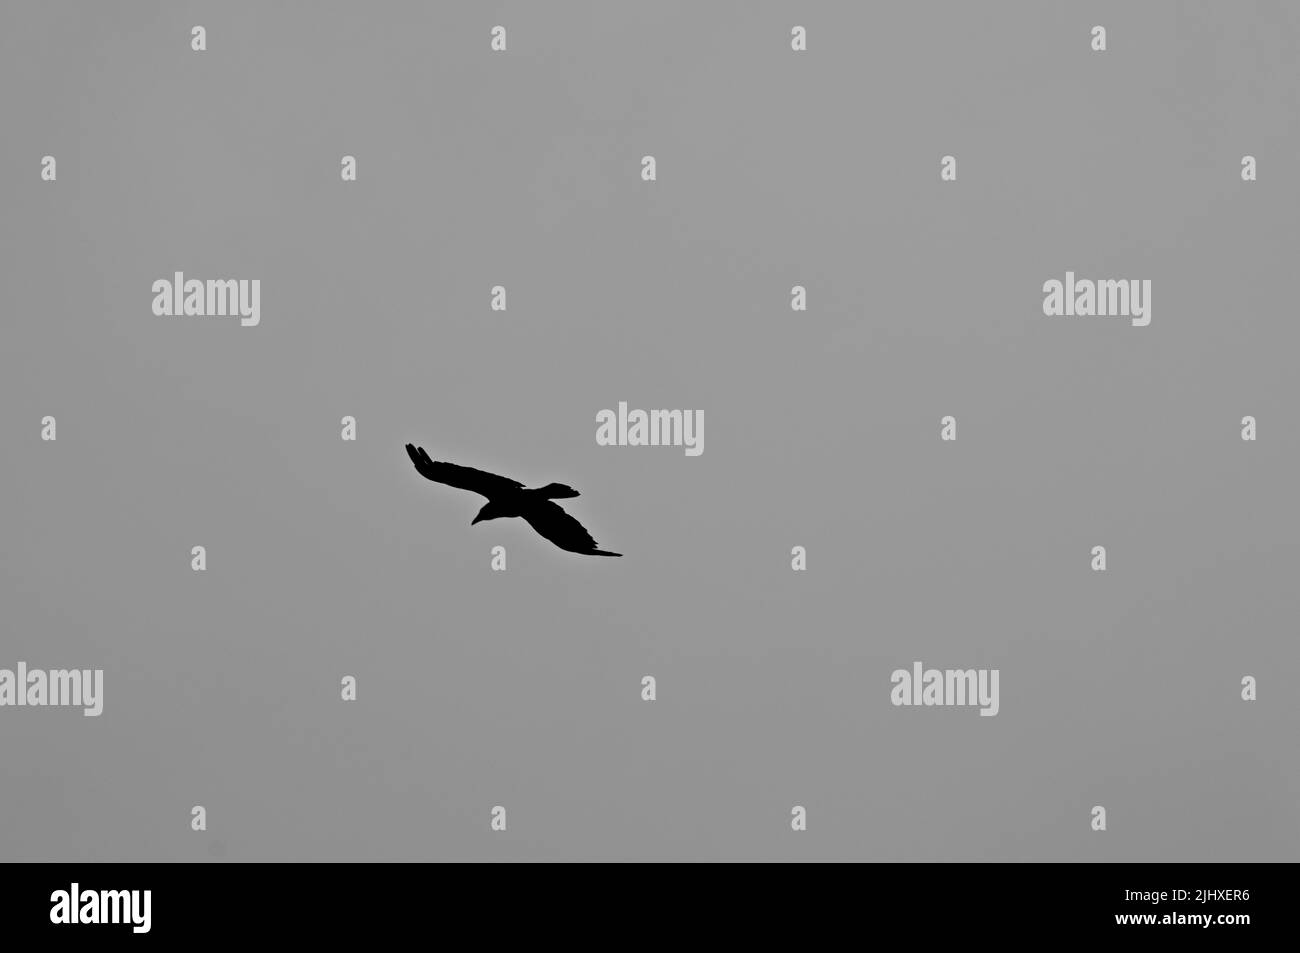 La silhouette nera di un corvo volante contro il cielo grigio Foto Stock